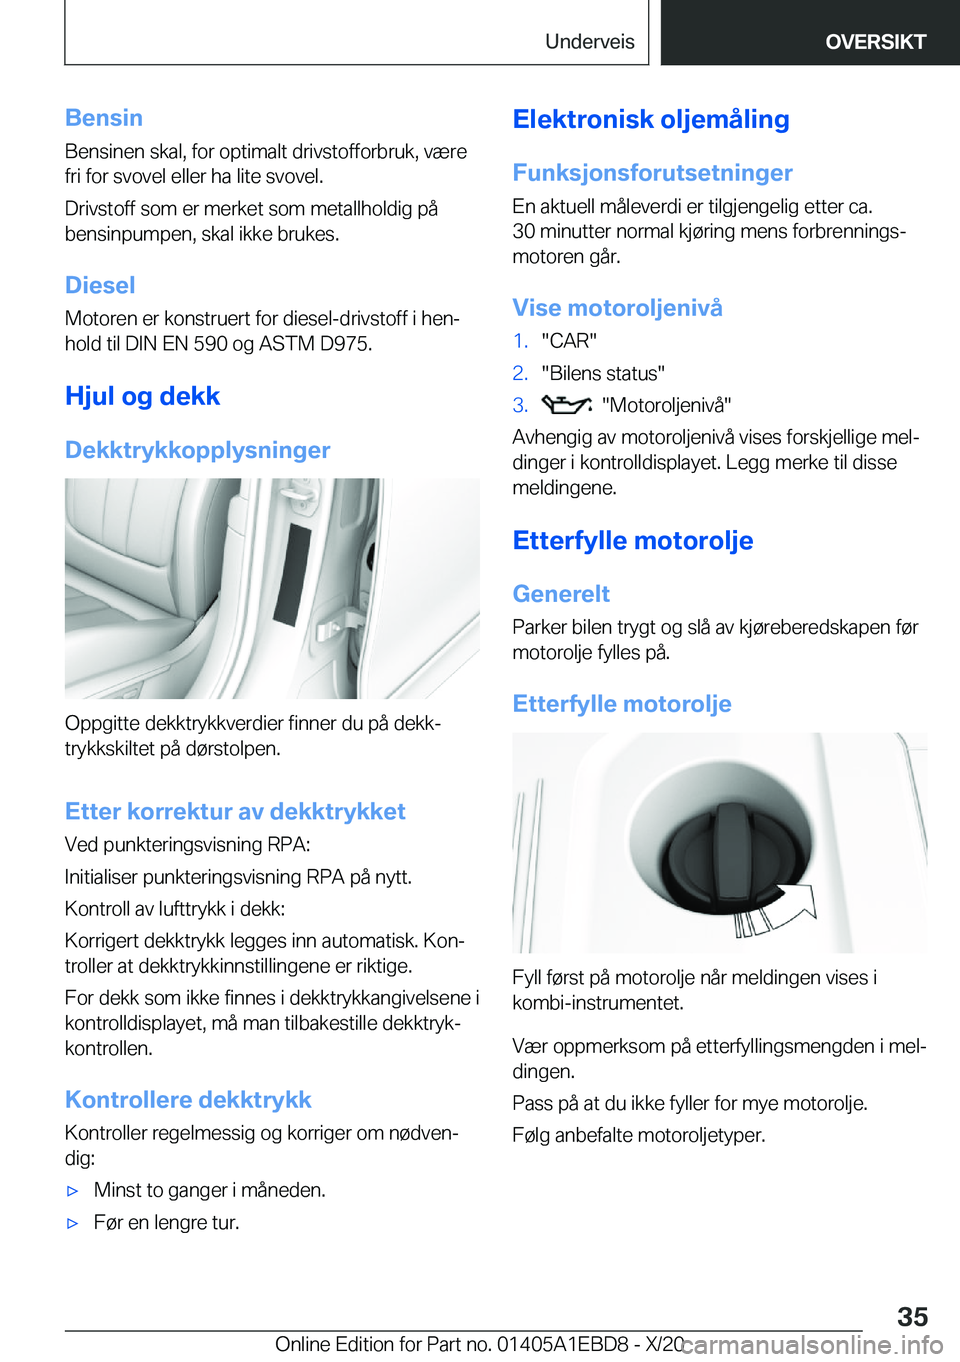 BMW 3 SERIES 2021  InstruksjonsbØker (in Norwegian) �B�e�n�s�i�n�B�e�n�s�i�n�e�n��s�k�a�l�,��f�o�r��o�p�t�i�m�a�l�t��d�r�i�v�s�t�o�f�f�o�r�b�r�u�k�,��v�æ�r�e�f�r�i��f�o�r��s�v�o�v�e�l��e�l�l�e�r��h�a��l�i�t�e��s�v�o�v�e�l�.
�D�r�i�v�s�t�o�f